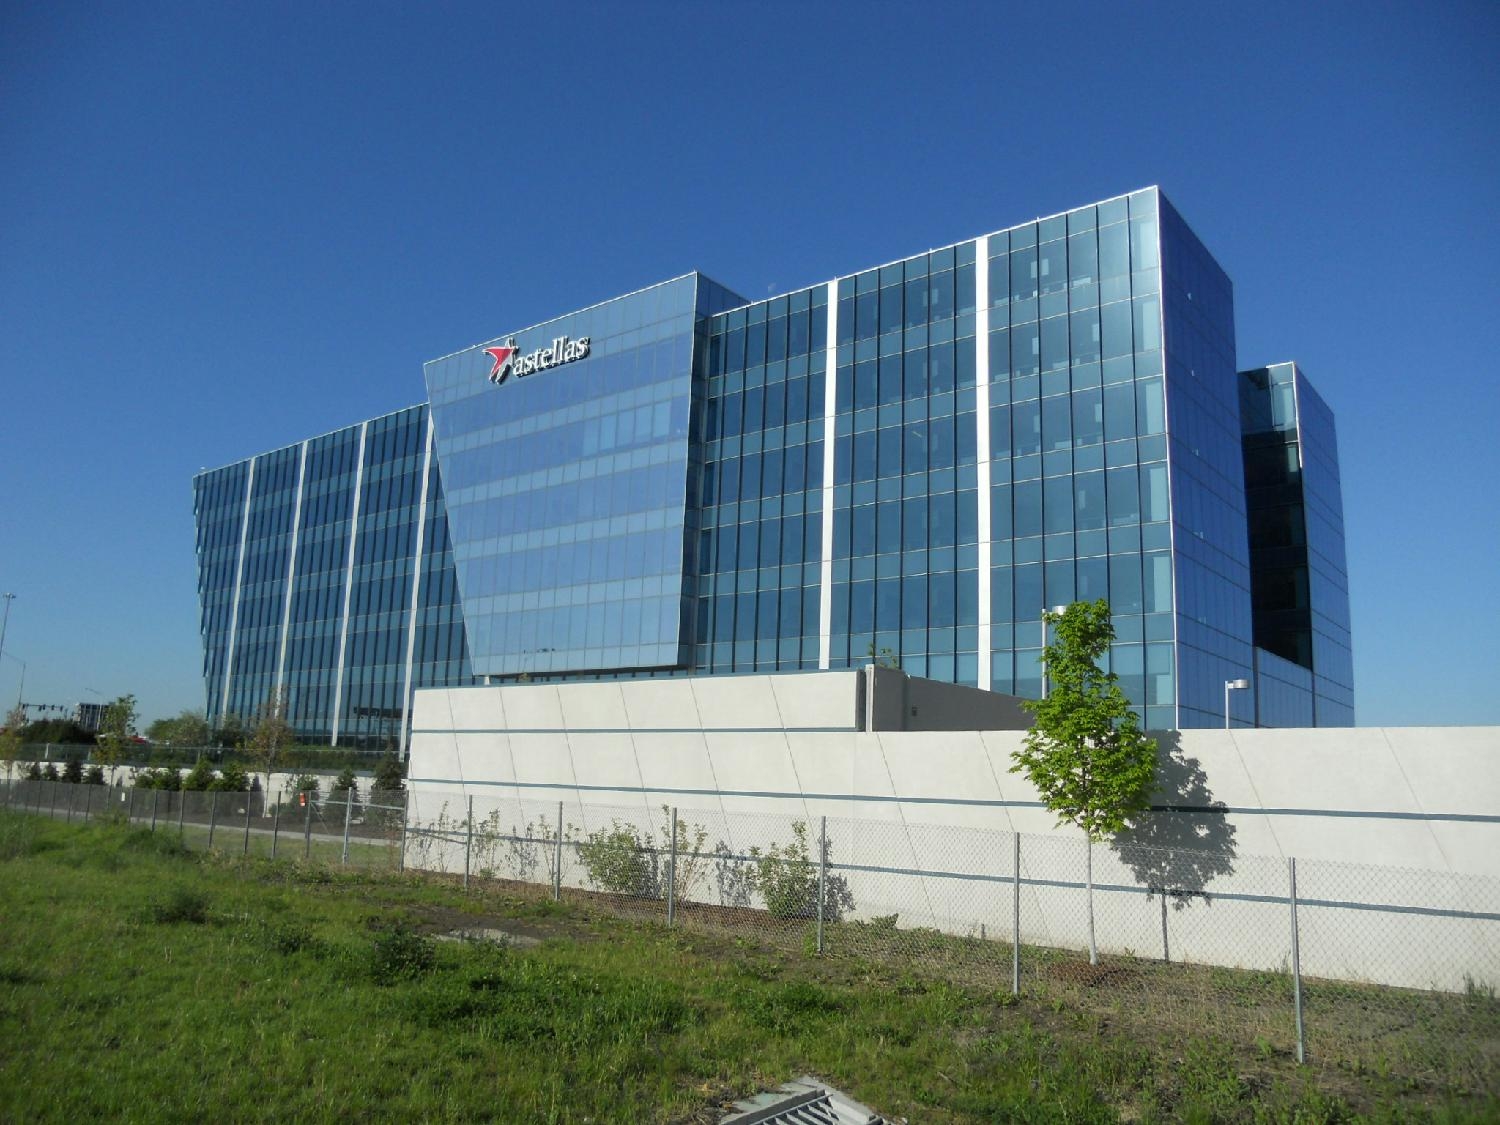 Astellas US Headquarters in Northbrook, Illinois